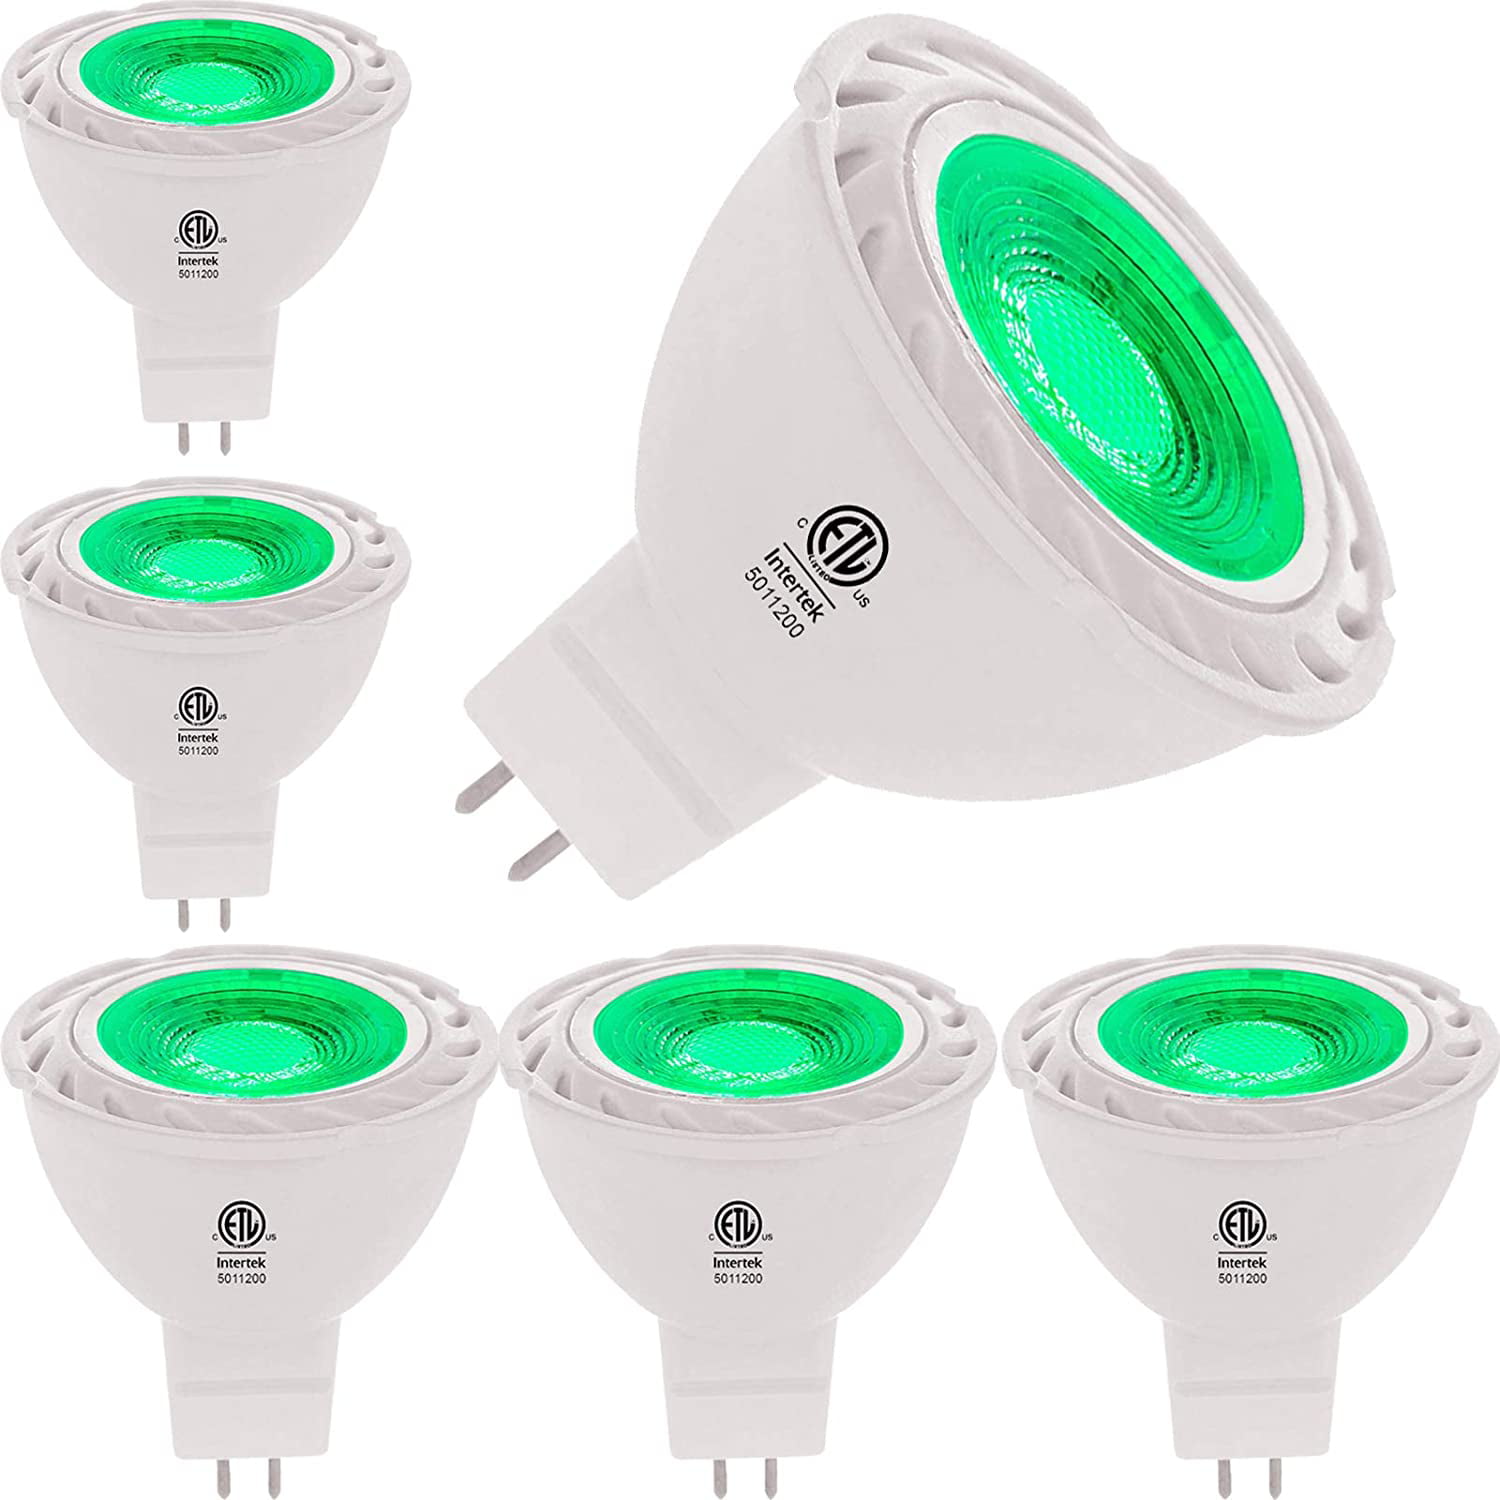 ergens bij betrokken zijn Schandelijk enz Green MR16 LED Light Bulbs 50W Equivalent Halogen Replacement 6W 12V Bi-pin  GU5.3 Outdoor Landscape Yard Lighting- Pack of 6 - Walmart.com